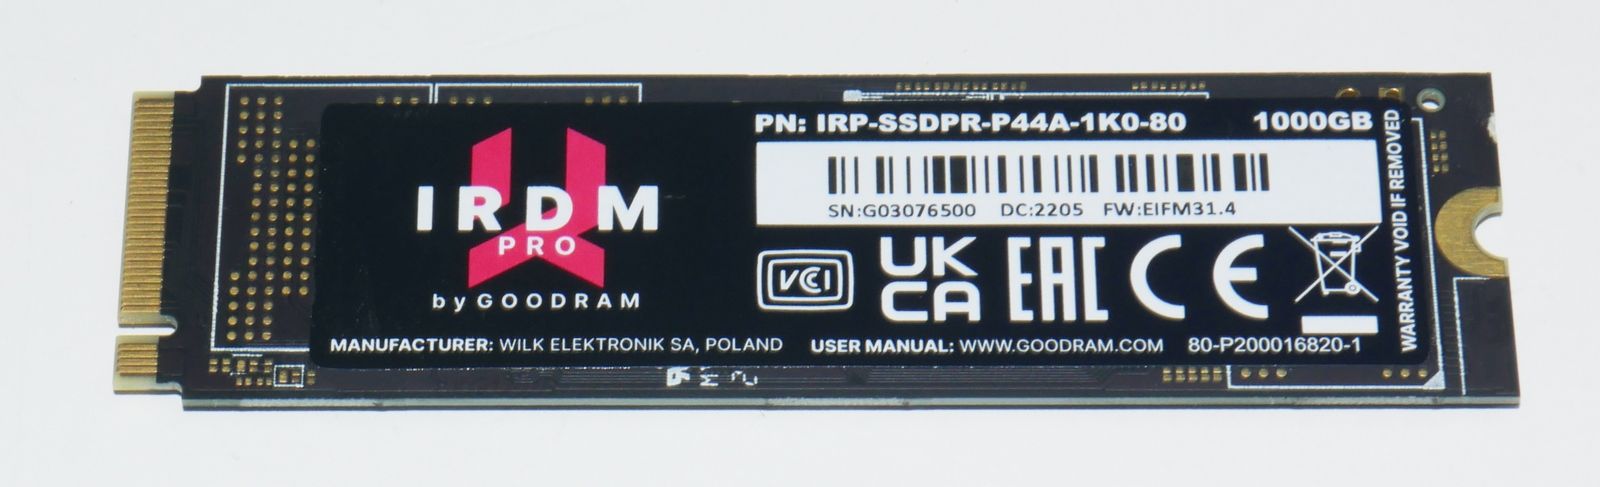 Review IRDM PRO M.2 SSD 1TB 7